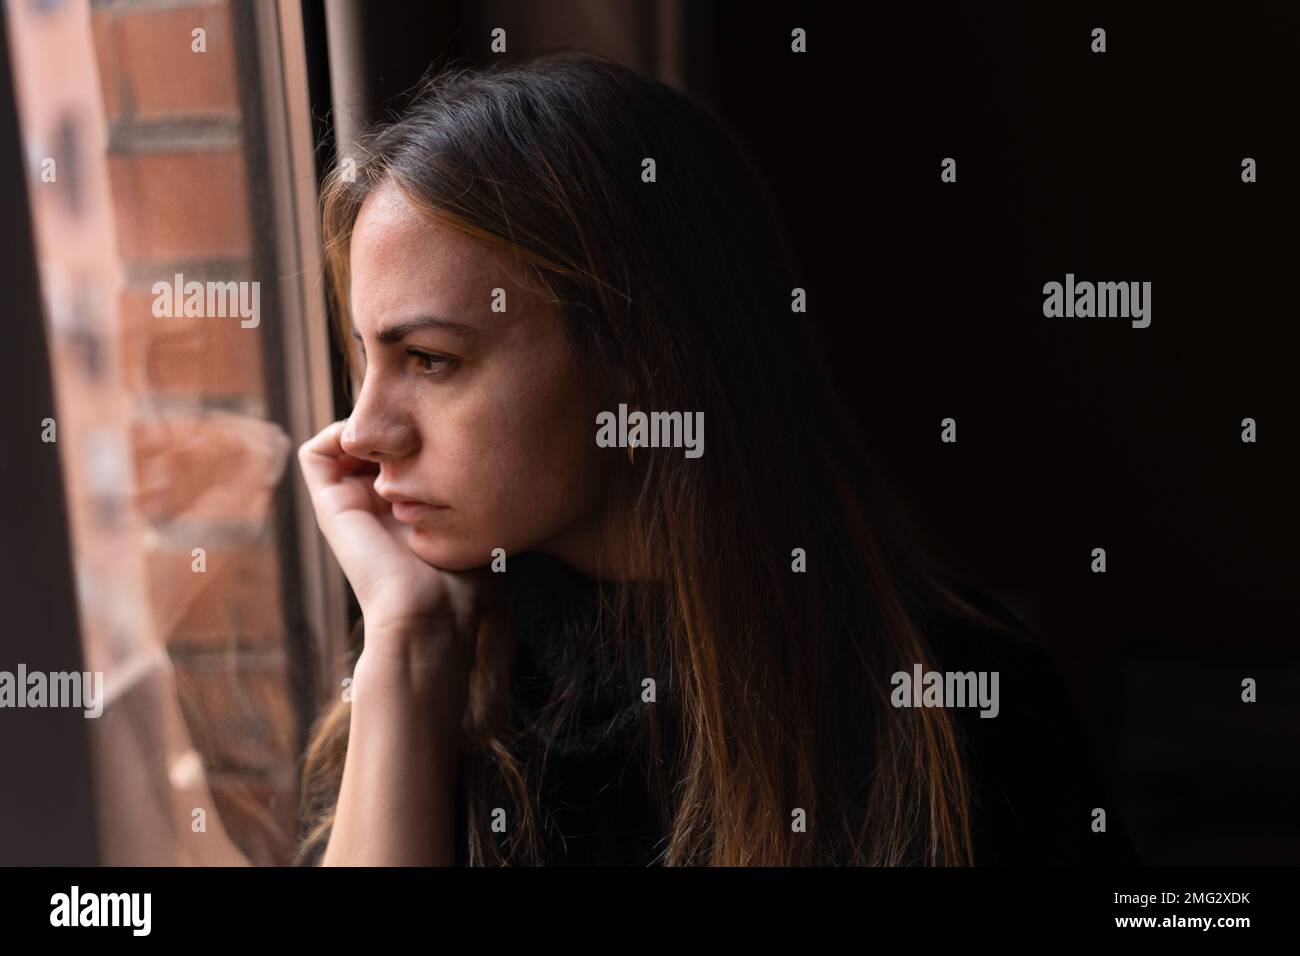 Seitenansicht einer jungen, nachdenklichen Frau mit langen dunklen Haaren, die sich am Kinn anlehnen und zu Hause aus dem Fenster schauen Stockfoto